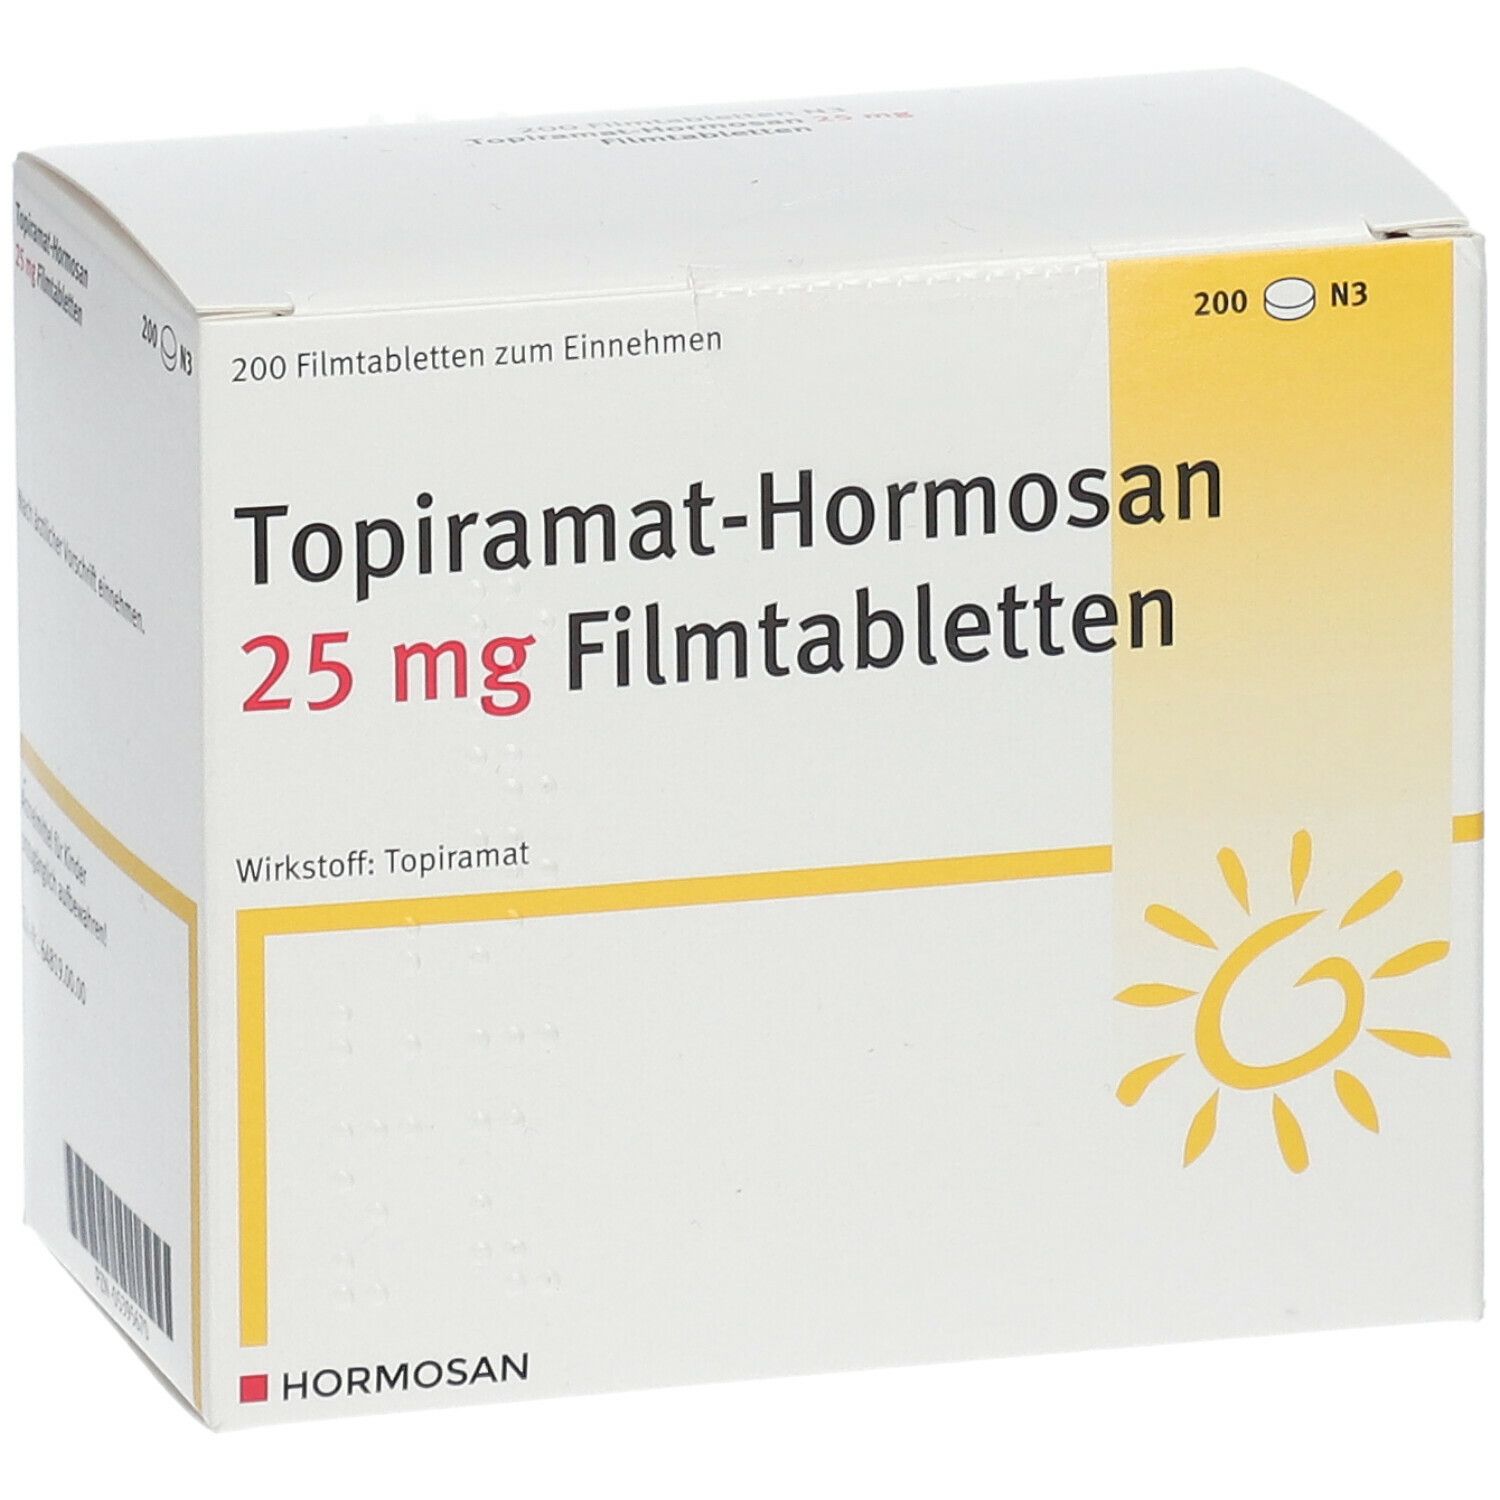 Topiramat-Hormosan 25 mg